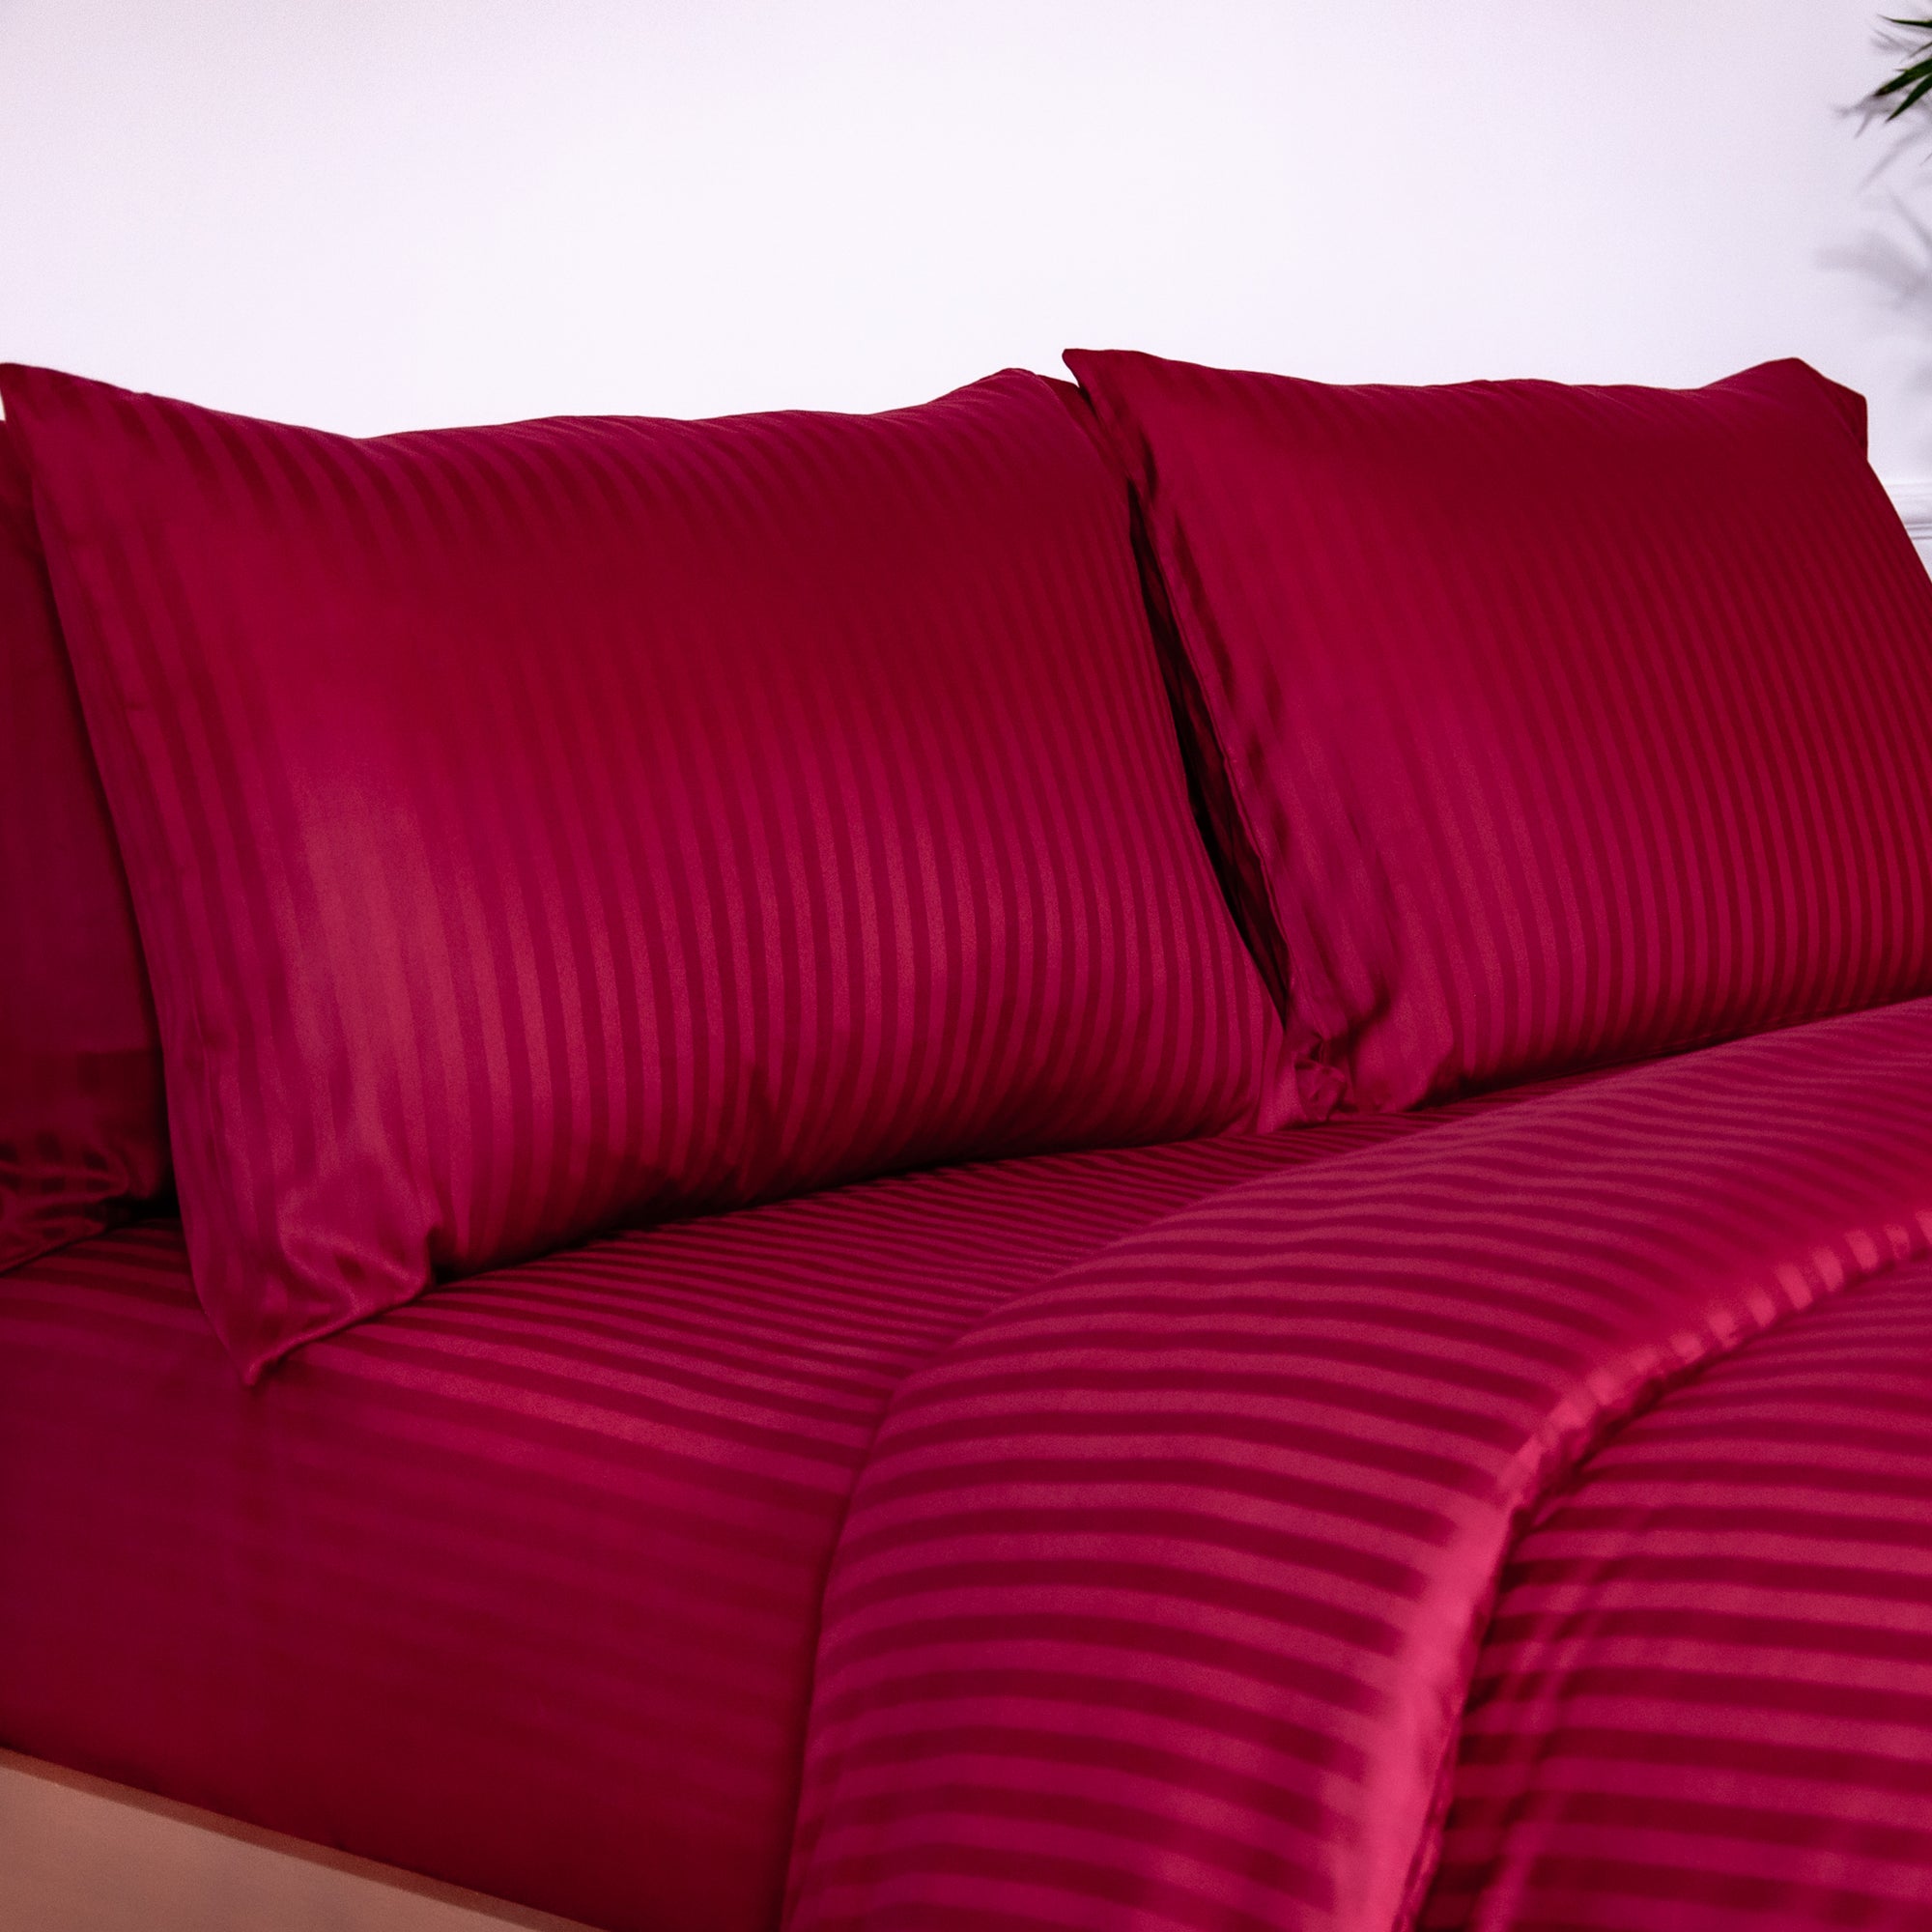 Einteiliger burgunderrot gestreifter Bettbezug aus 100 % Baumwollsatin